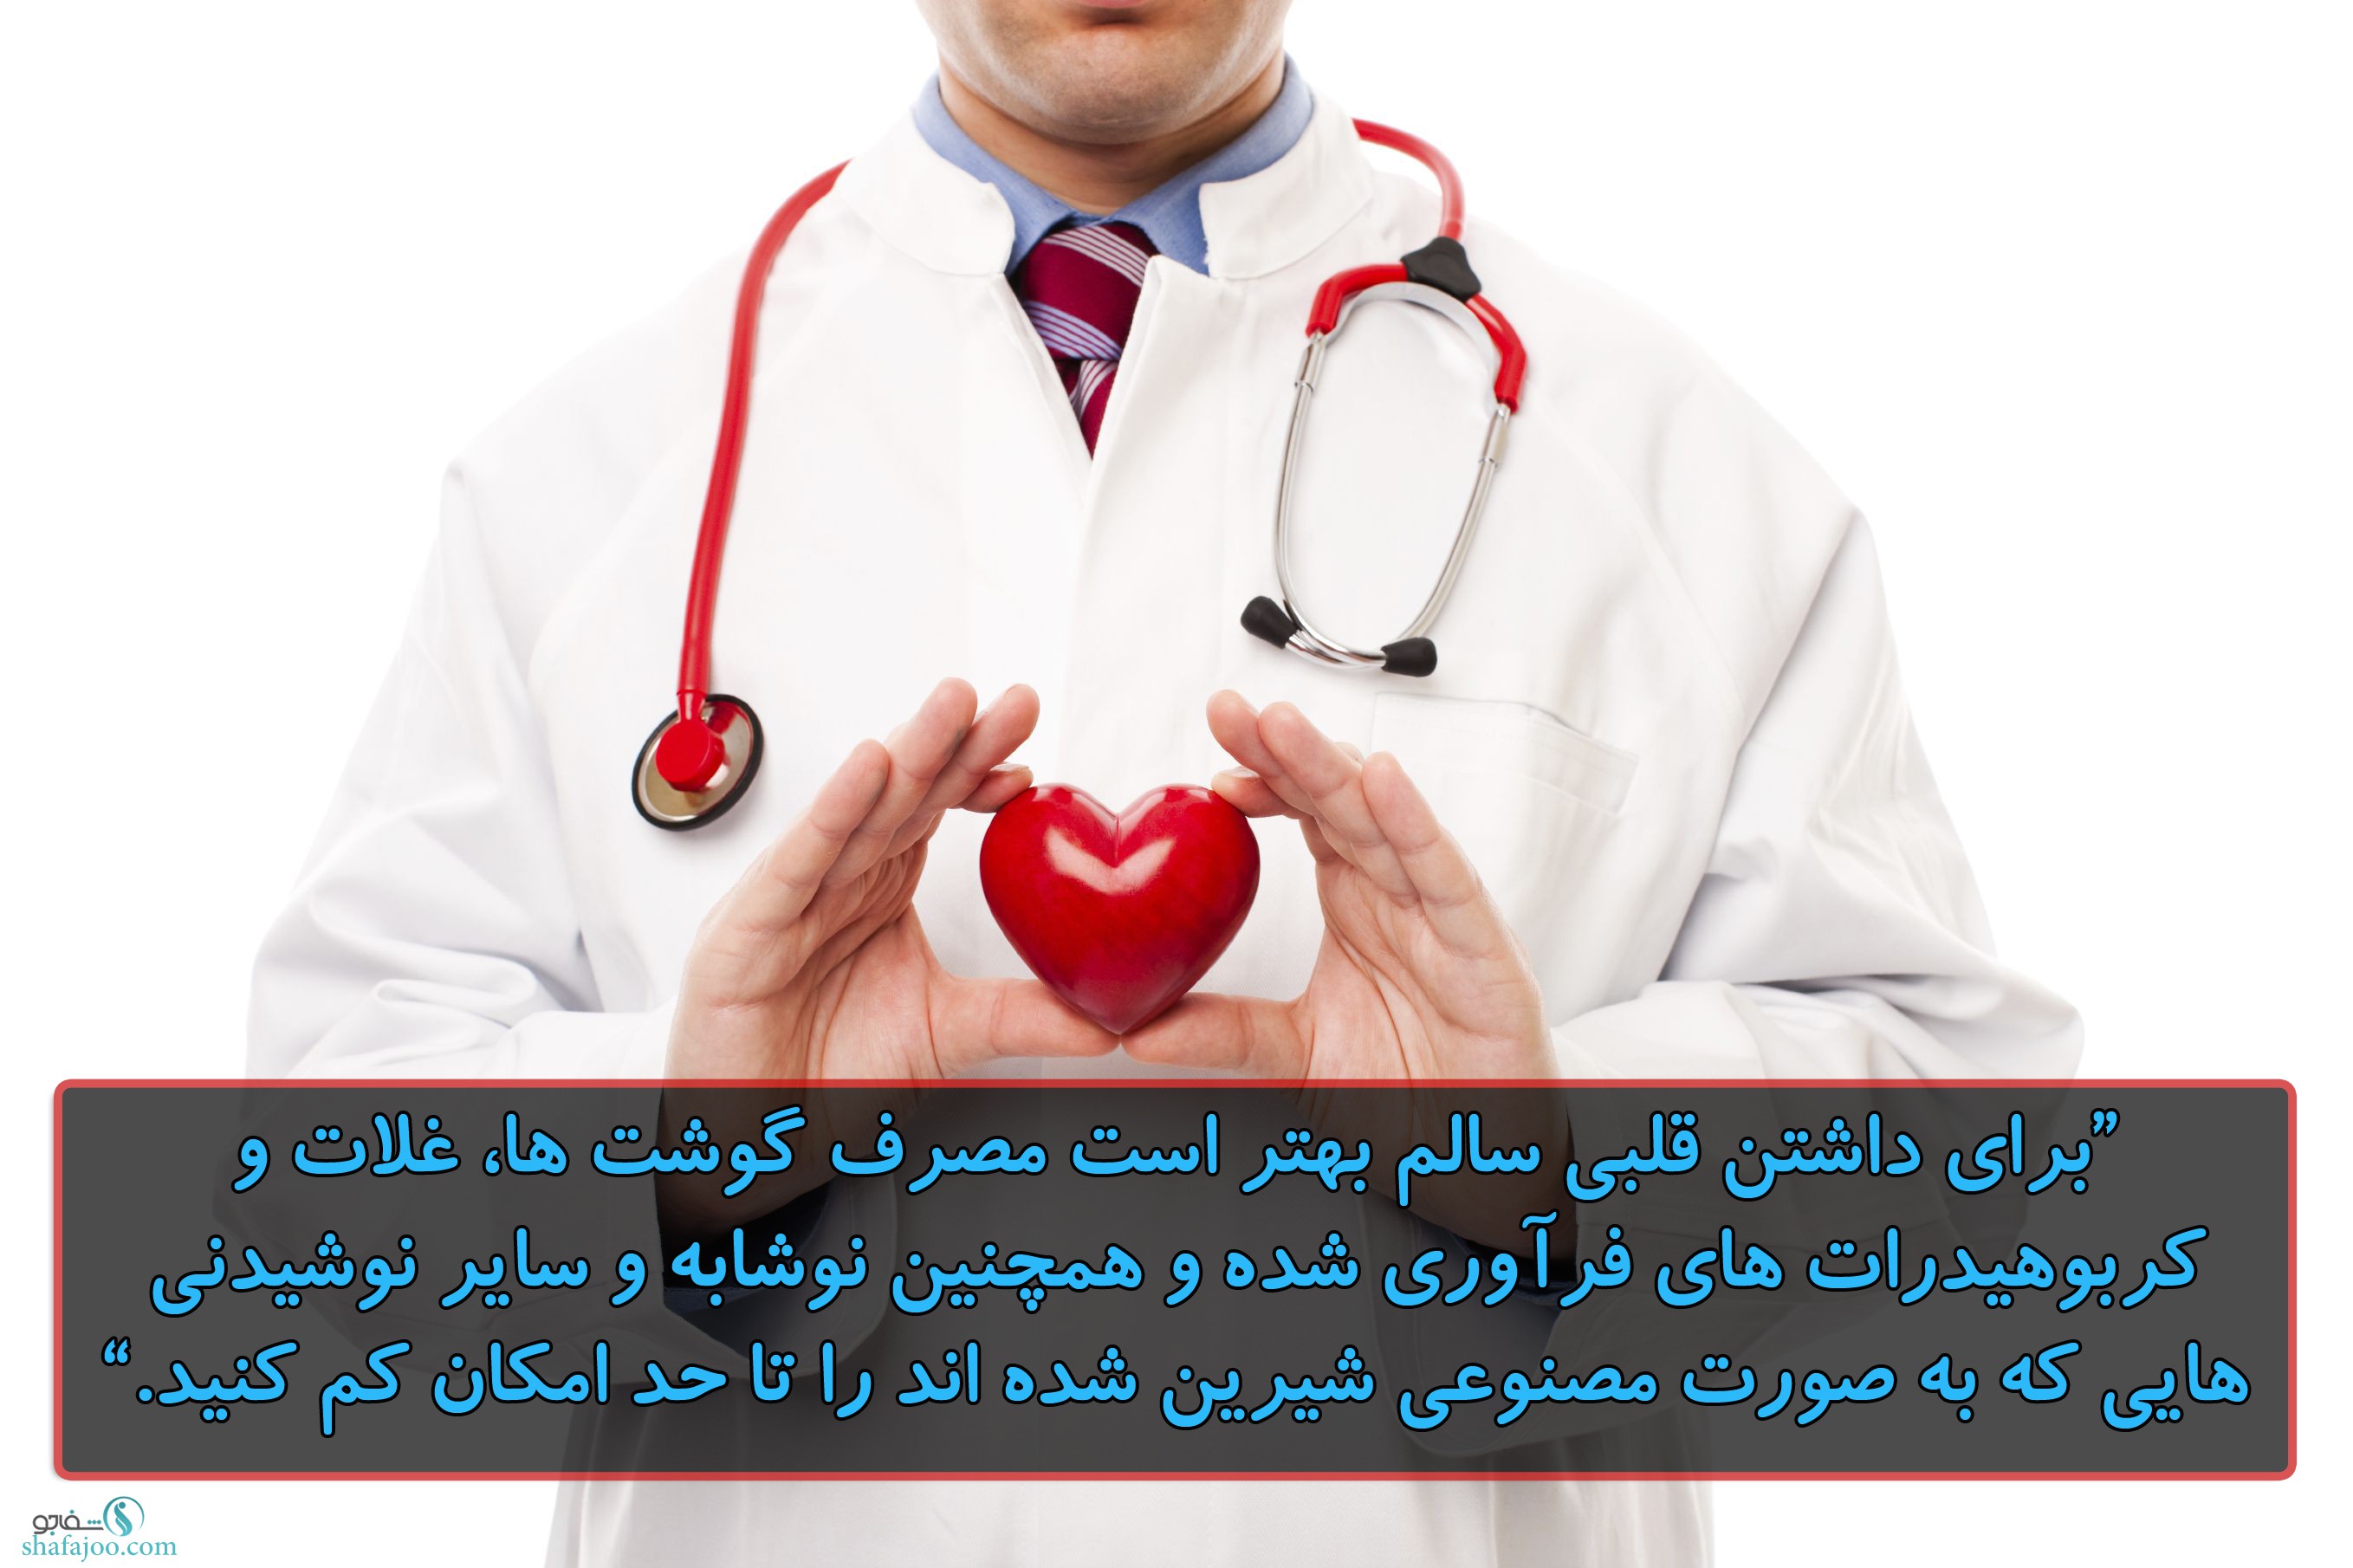 قلب سالم با کاهش استفاده از محصولاتی که به صورت مصنوعی ...